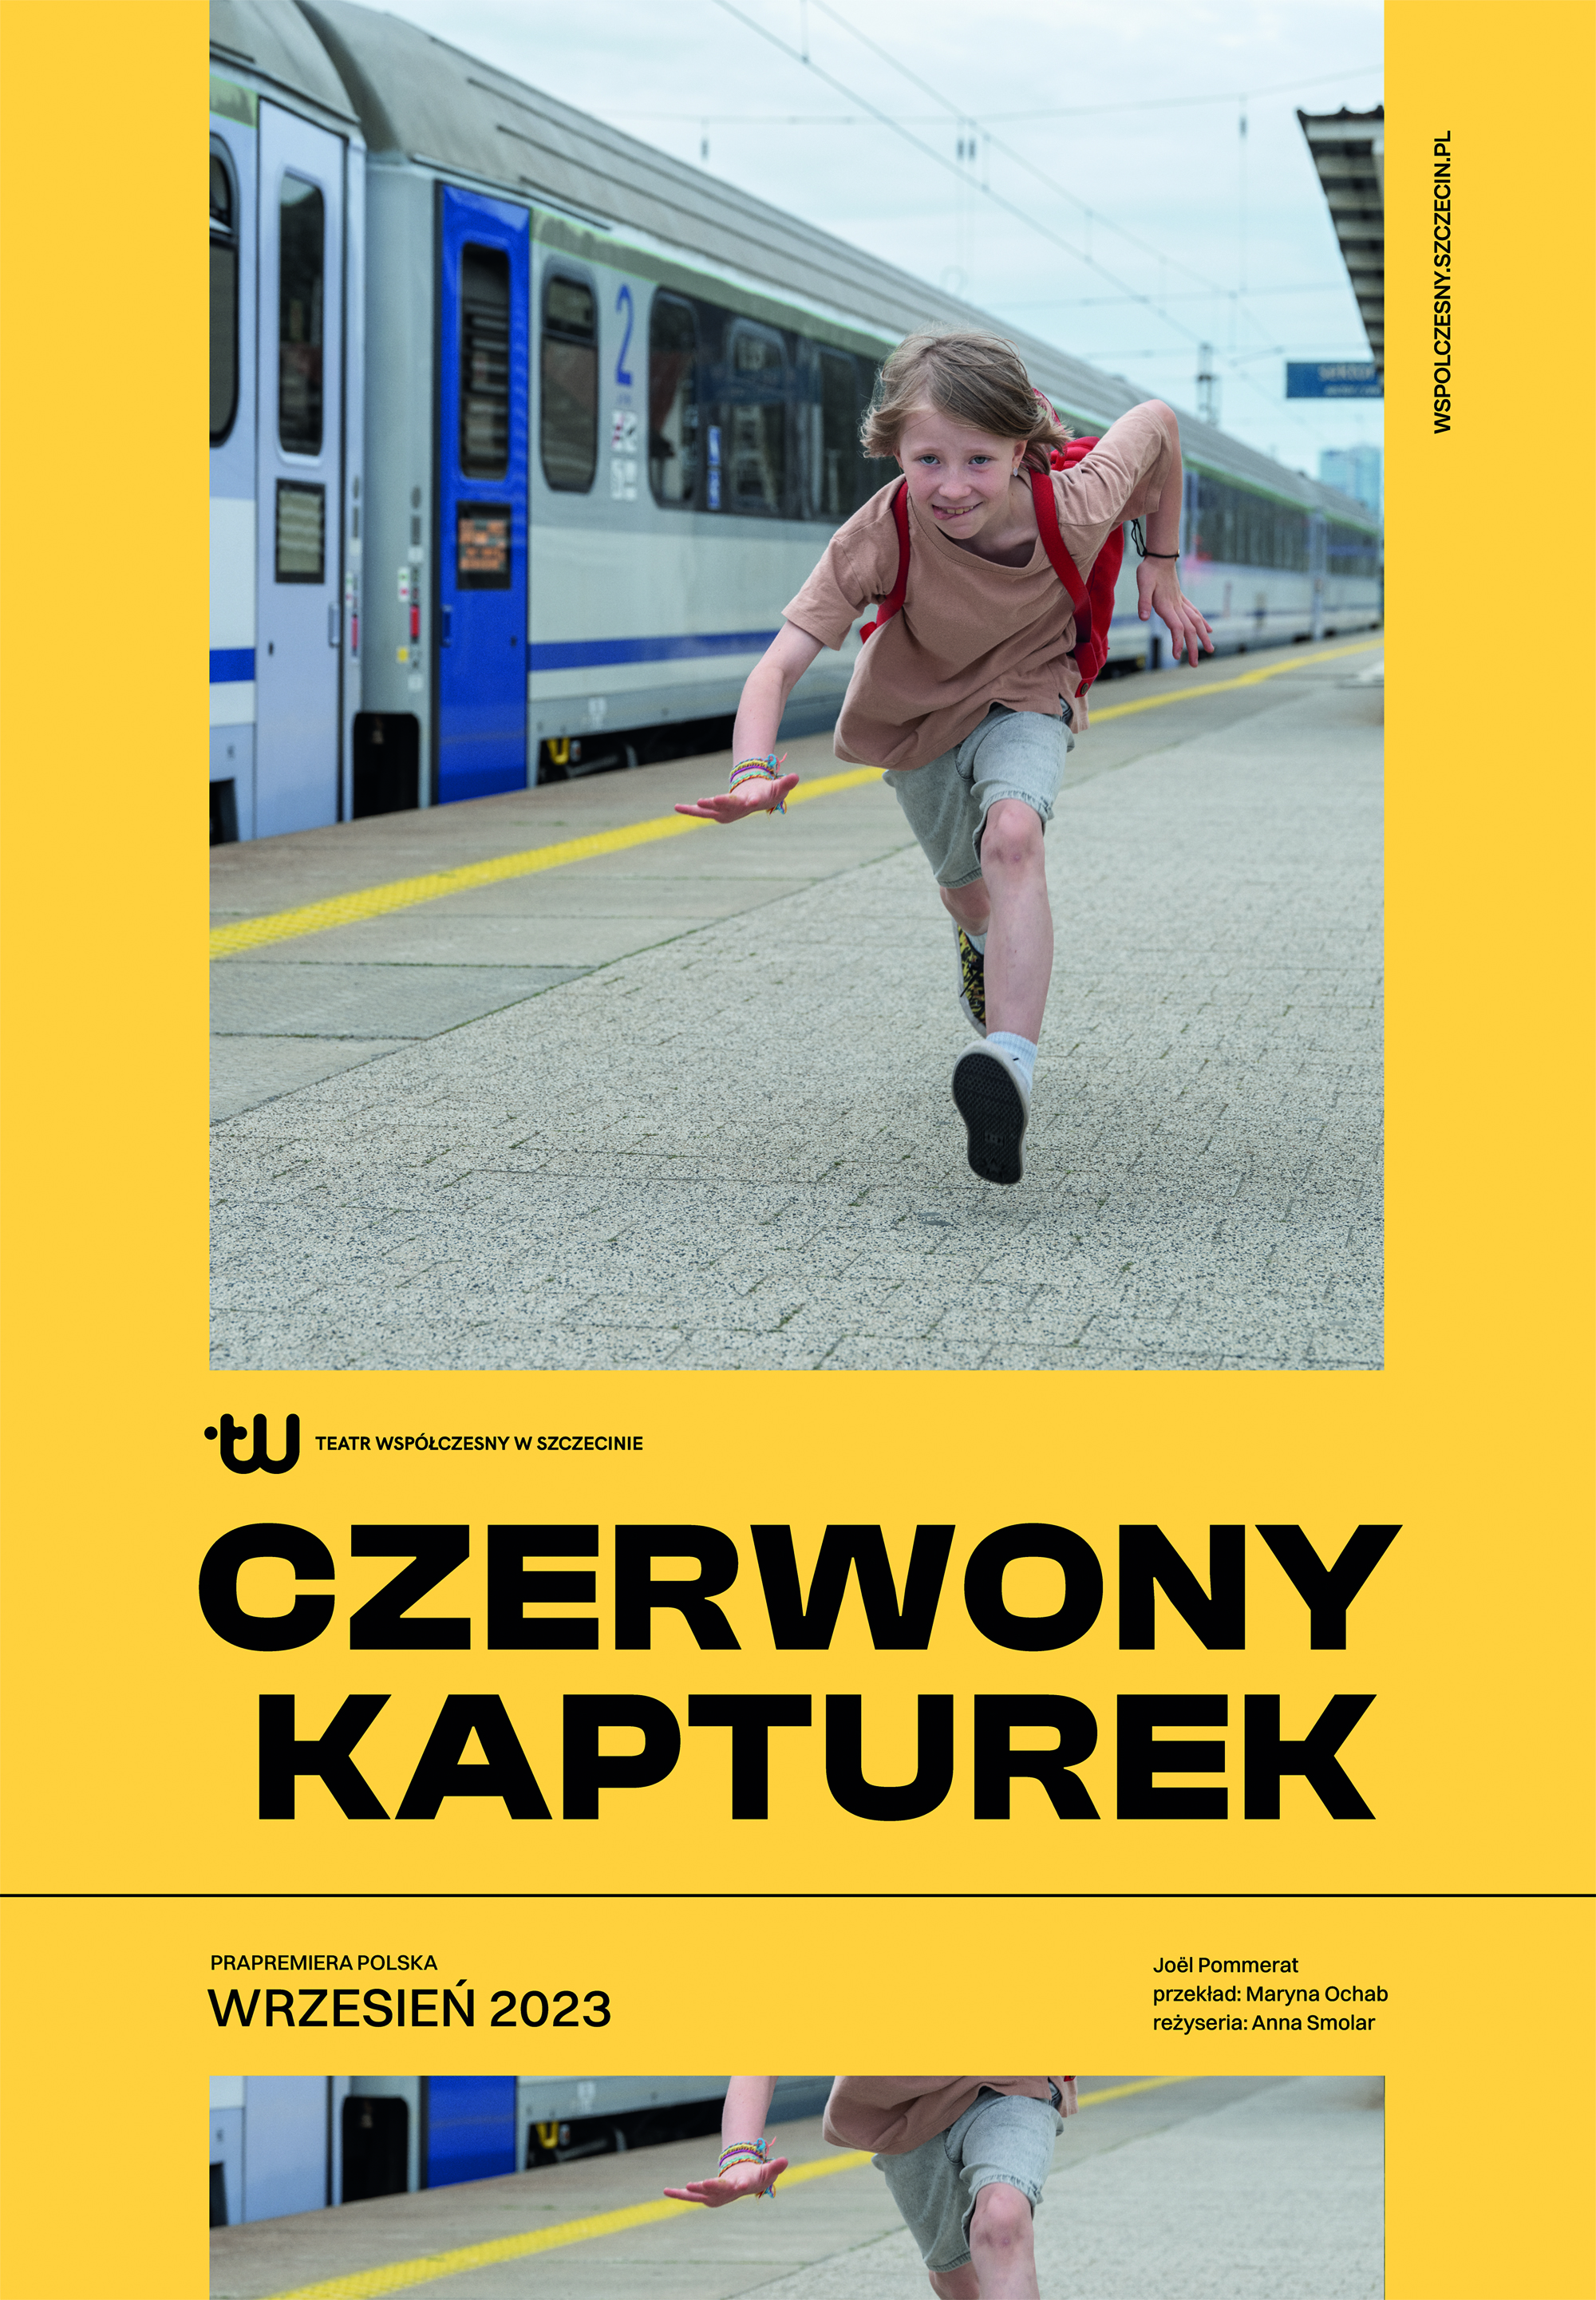 Plakat do spektaklu. Zdjęcie plakatowe przedstawia dziewczynkę biegnącą po peronie.